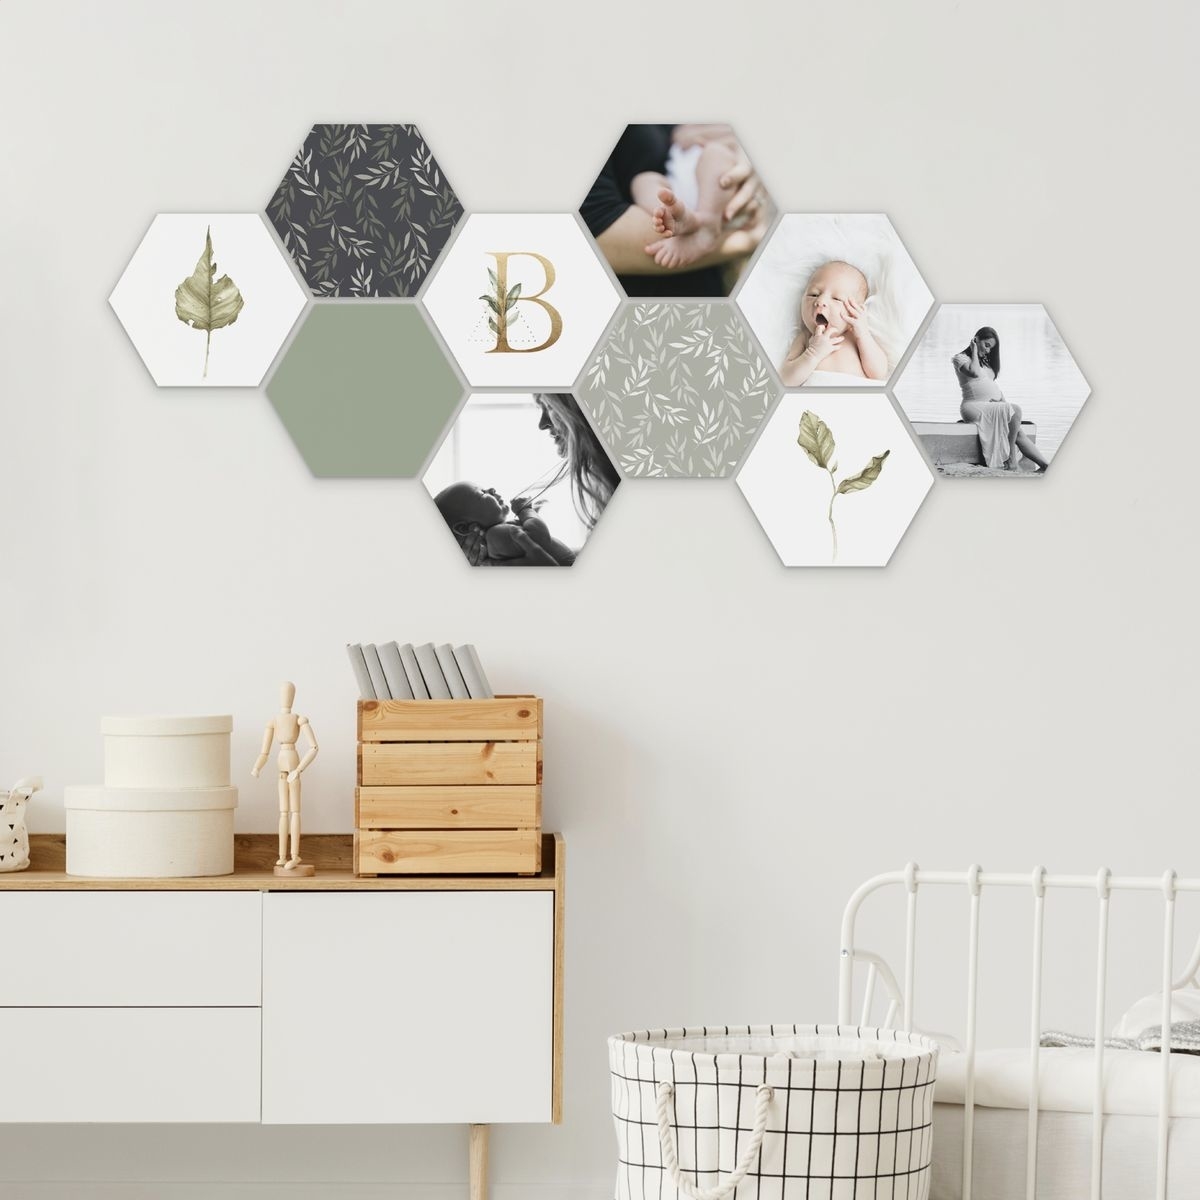 De leukste plekken voor hexagons in huis